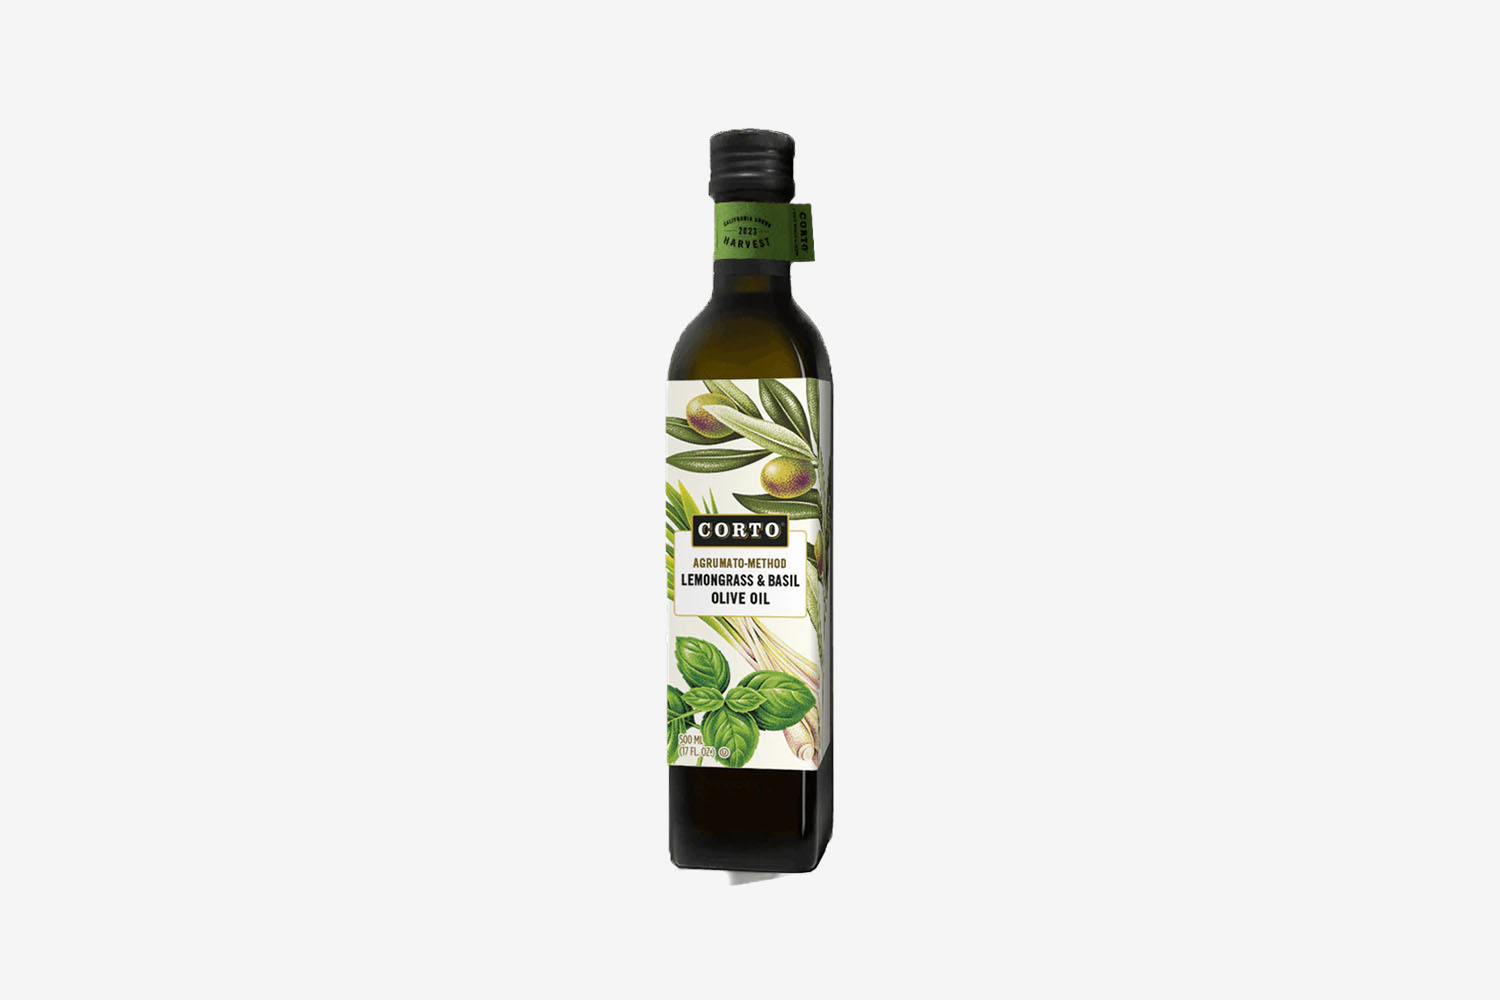 Corto Lemongrass & Basil Olive Oil